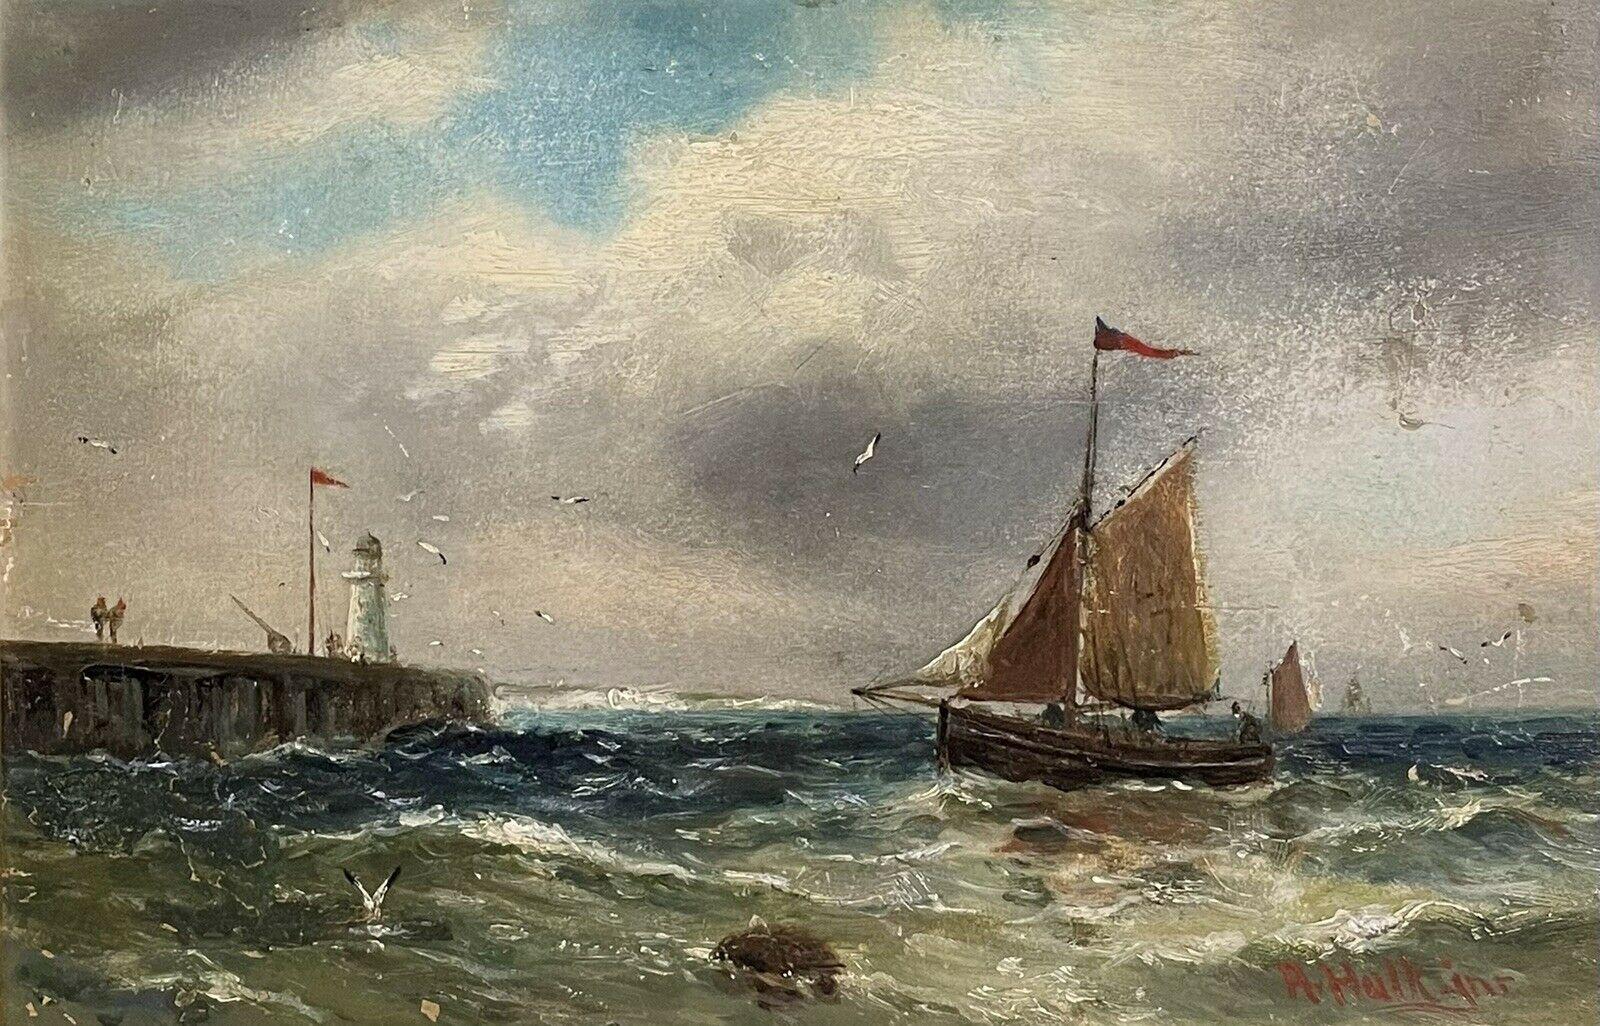 Landscape Painting Abraham Hulk jnr 1851 - 1922 - Peinture à l'huile de la marine britannique victorienne, bateau de pêche au large d'un joyau dans des eaux tempérées